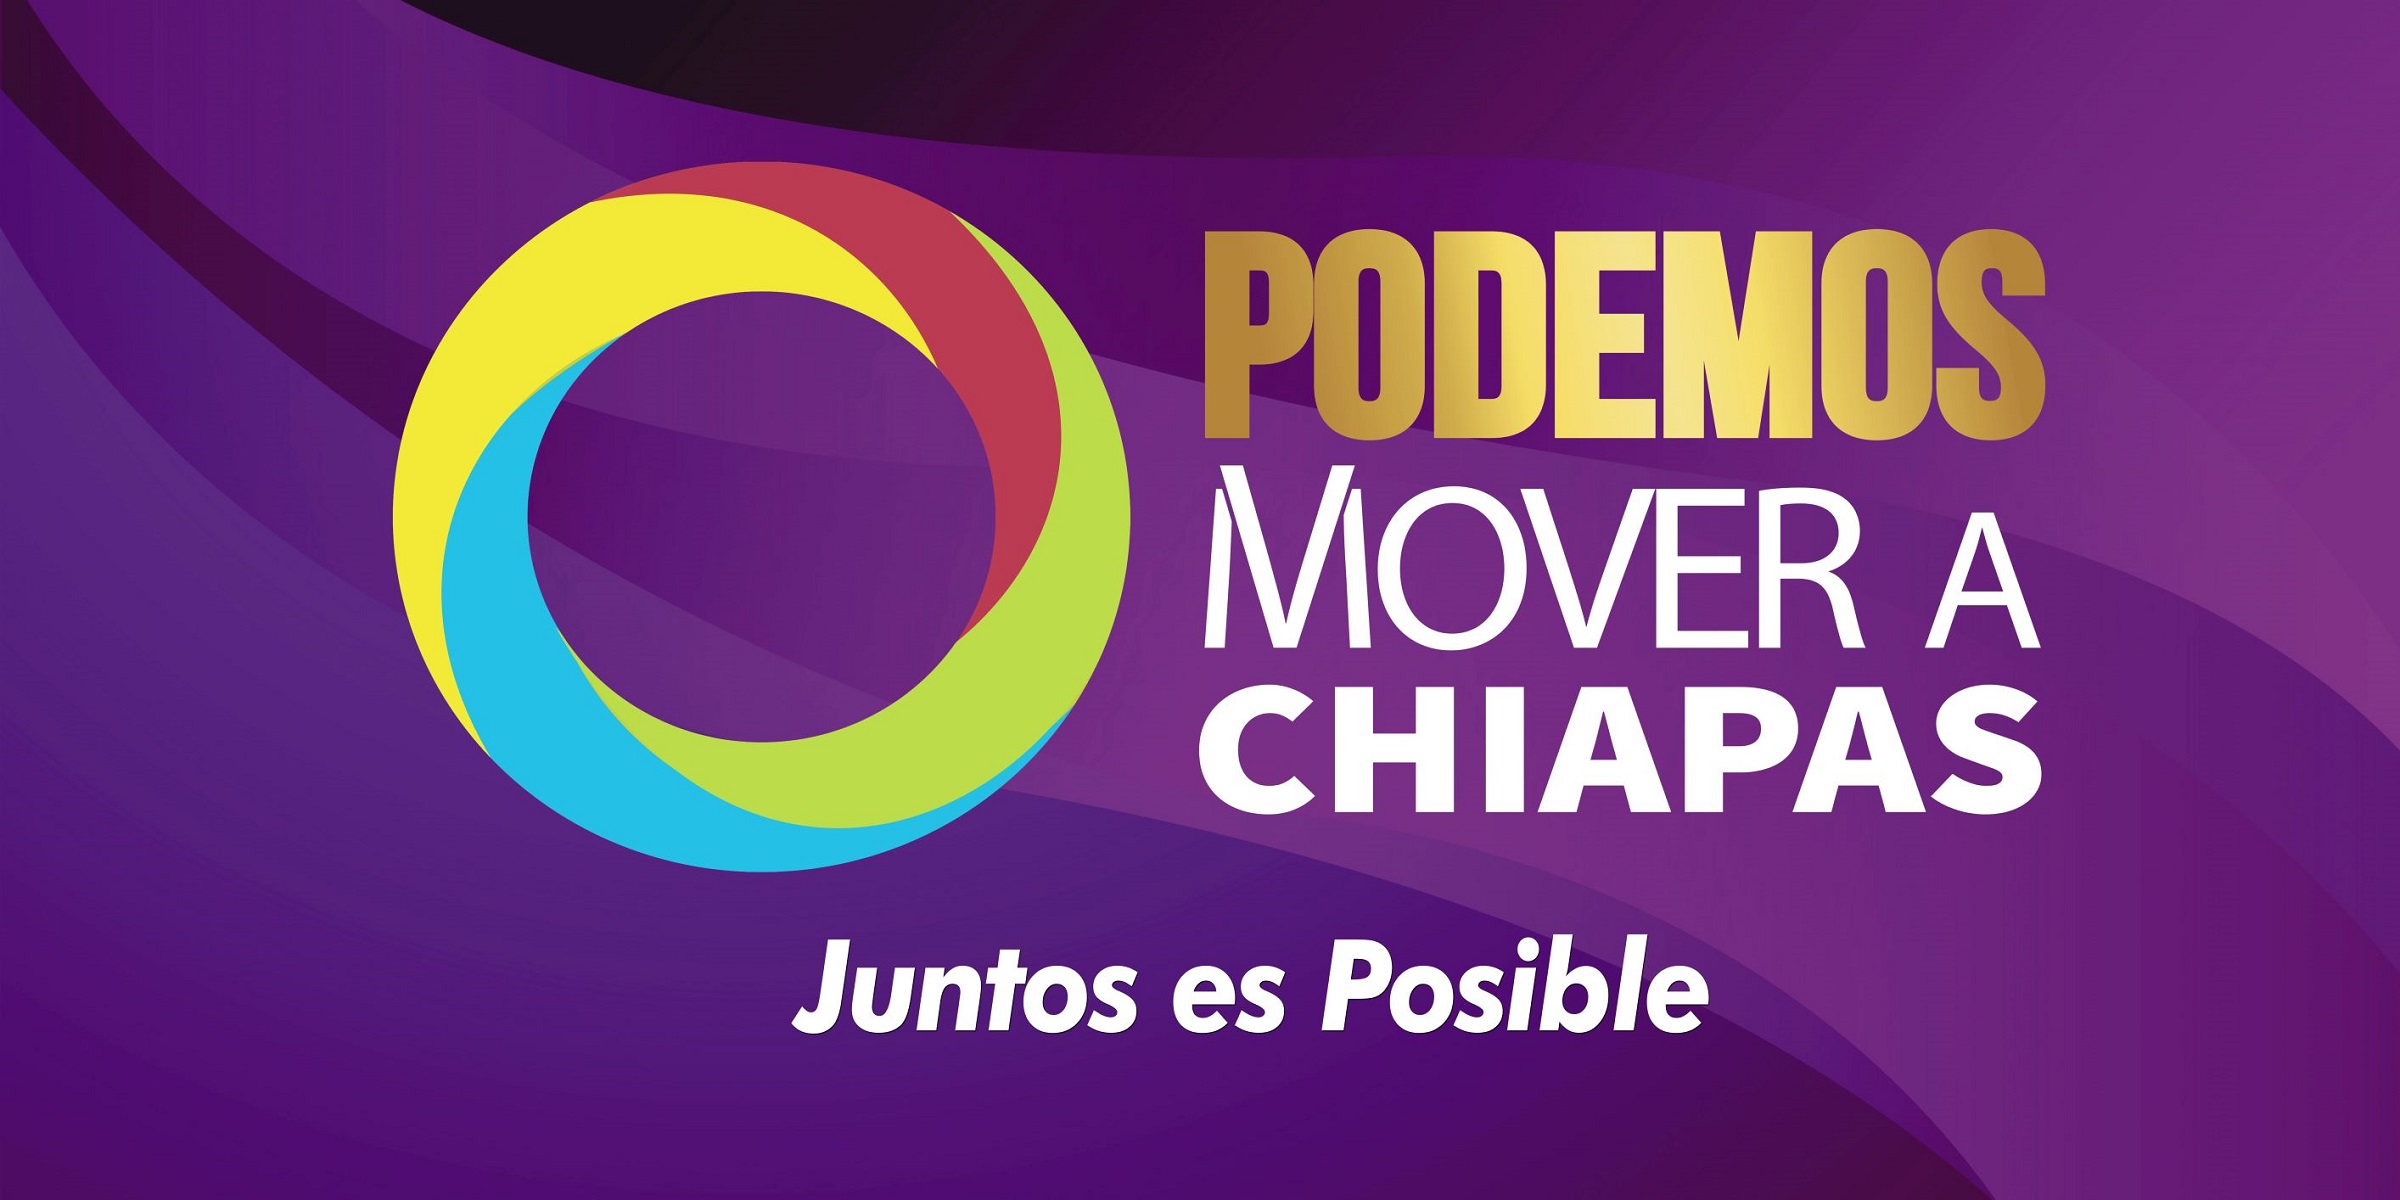 Nuevo Presidente Podemos Mover a Chiapas